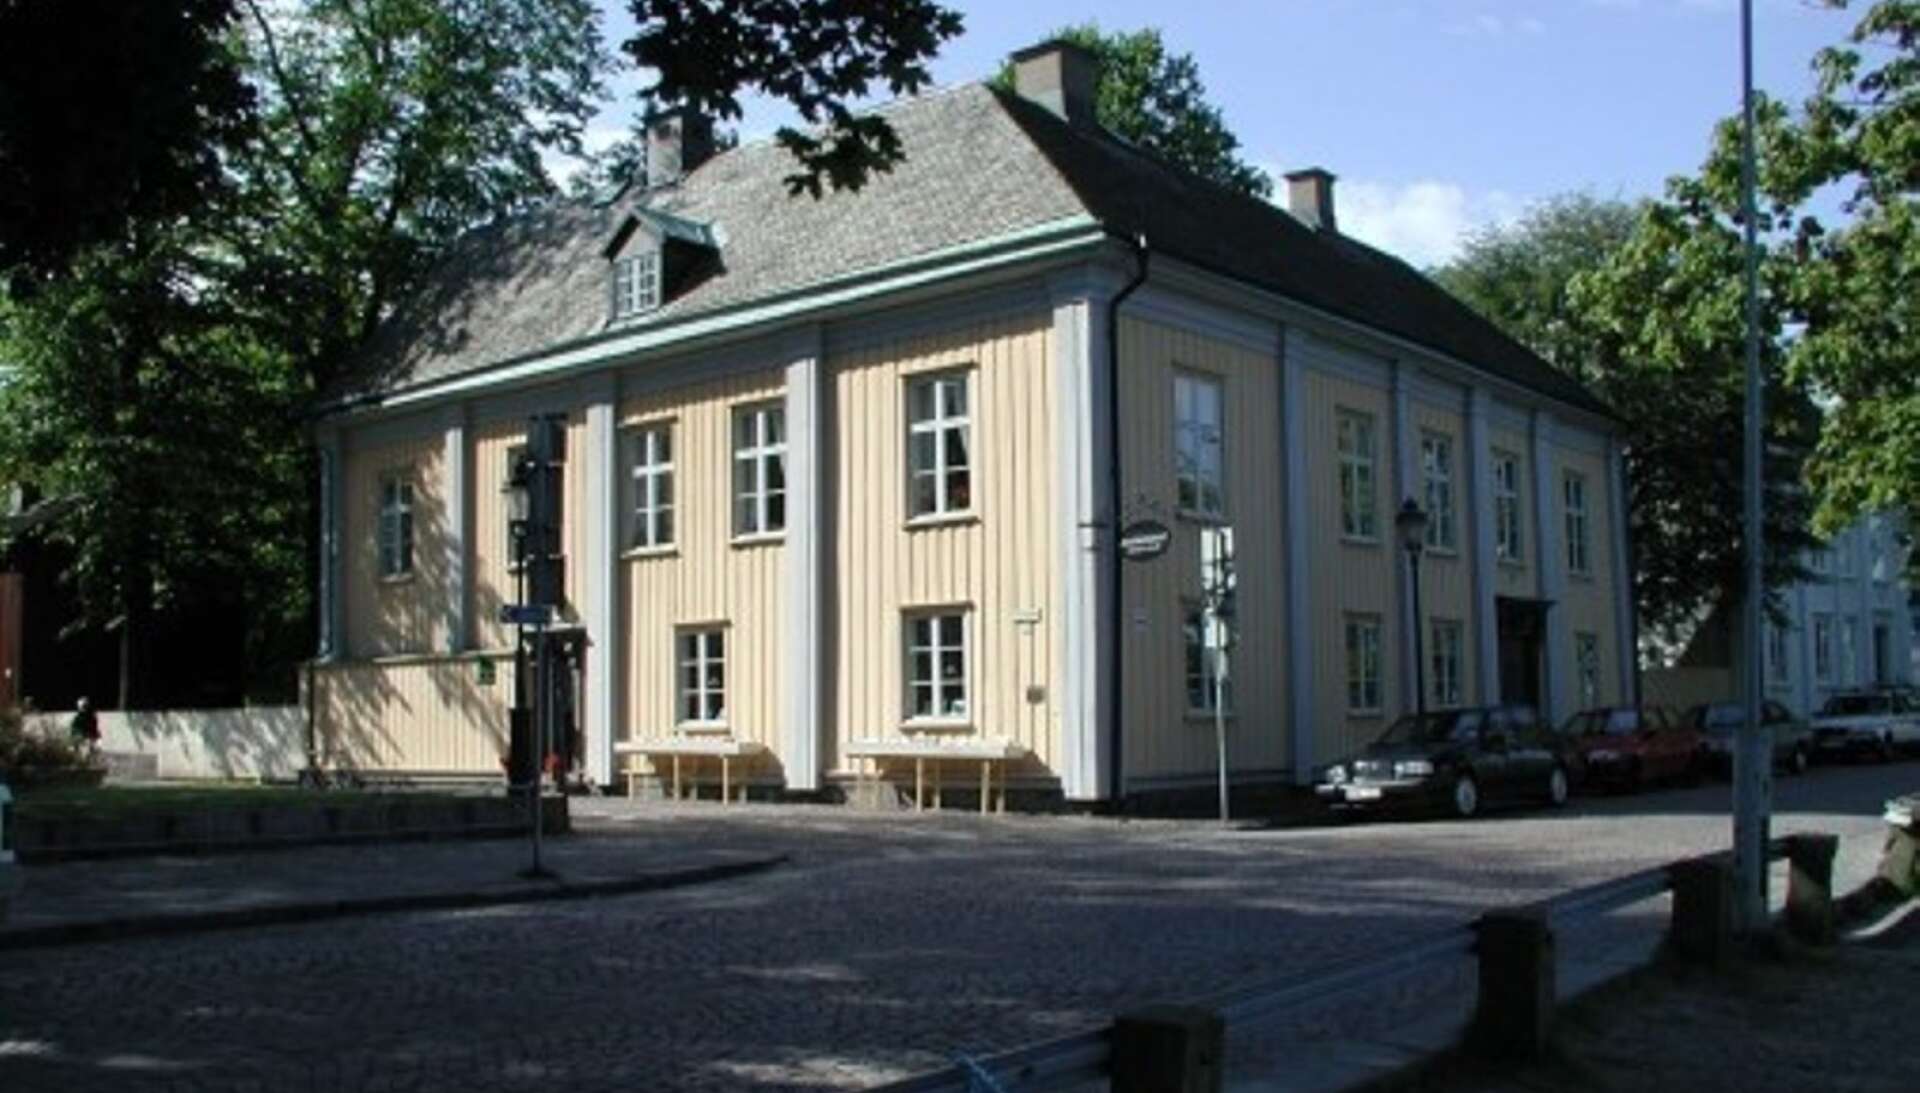 Landshövdingegården byggdes i början av 1700-talet. Värmlands landshövding Johan Gustav Uggla bodde i huset mellan 1779-1793.